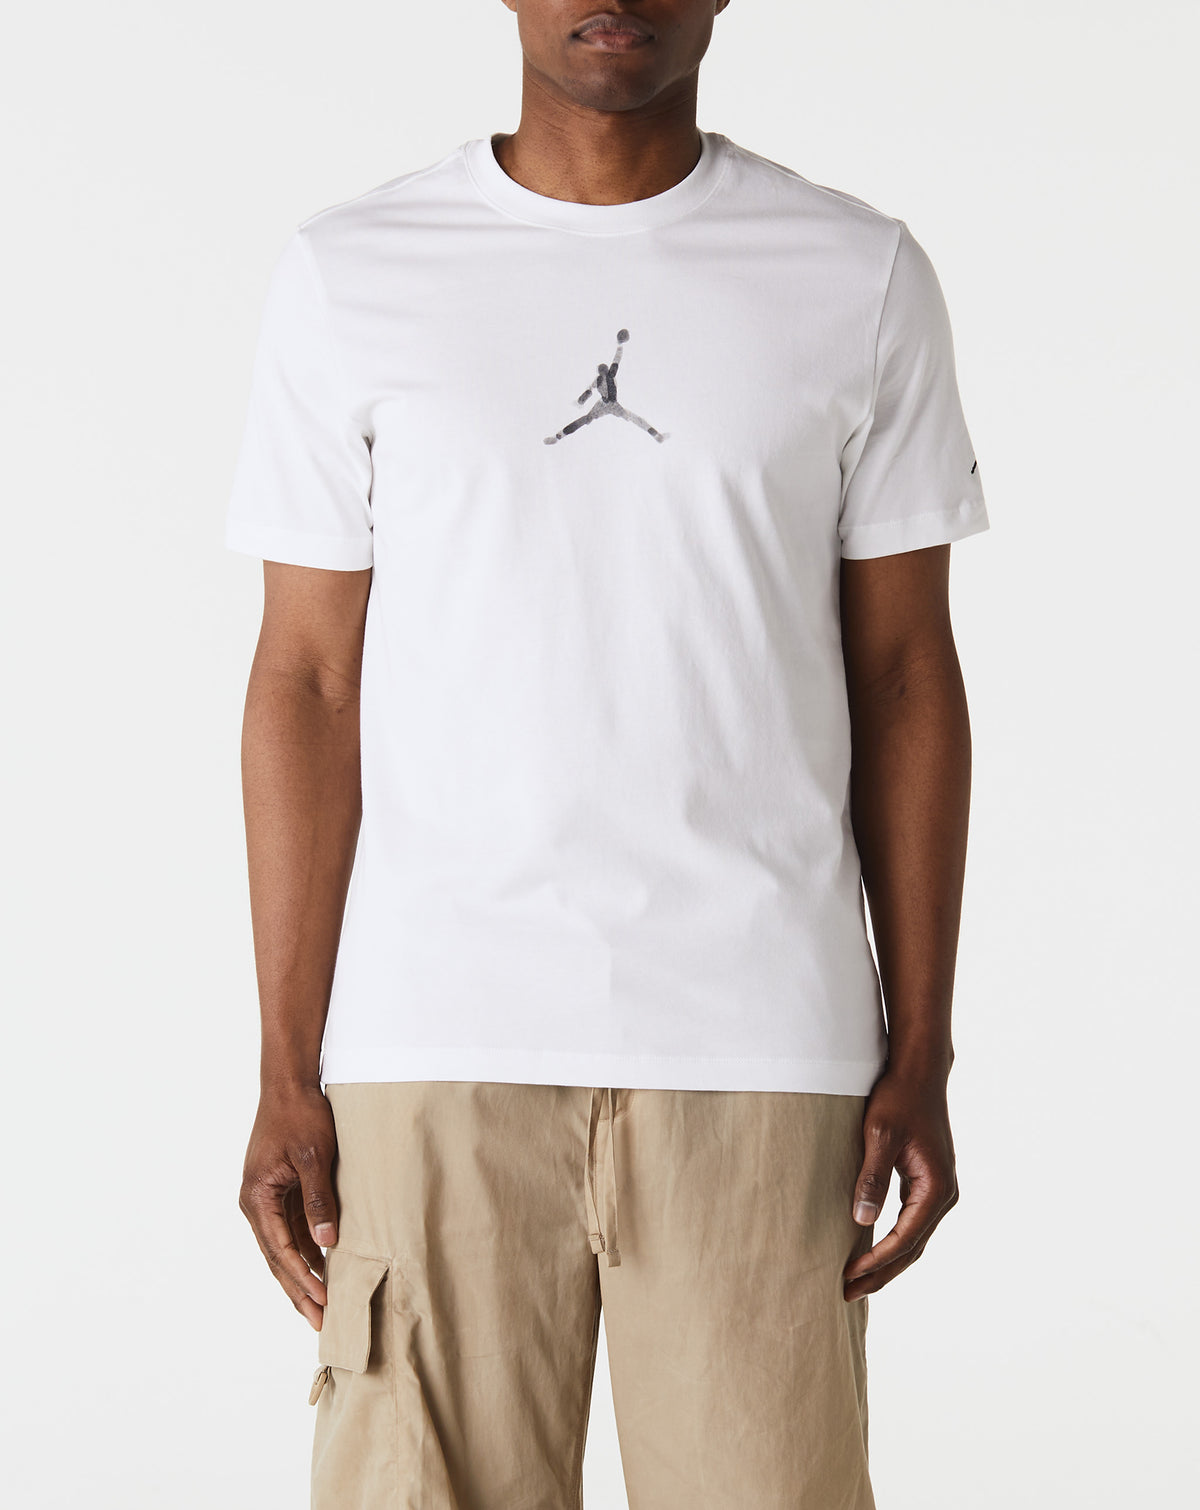 Air Jordan Jordan T-Shirt - Rule of Next Apparel